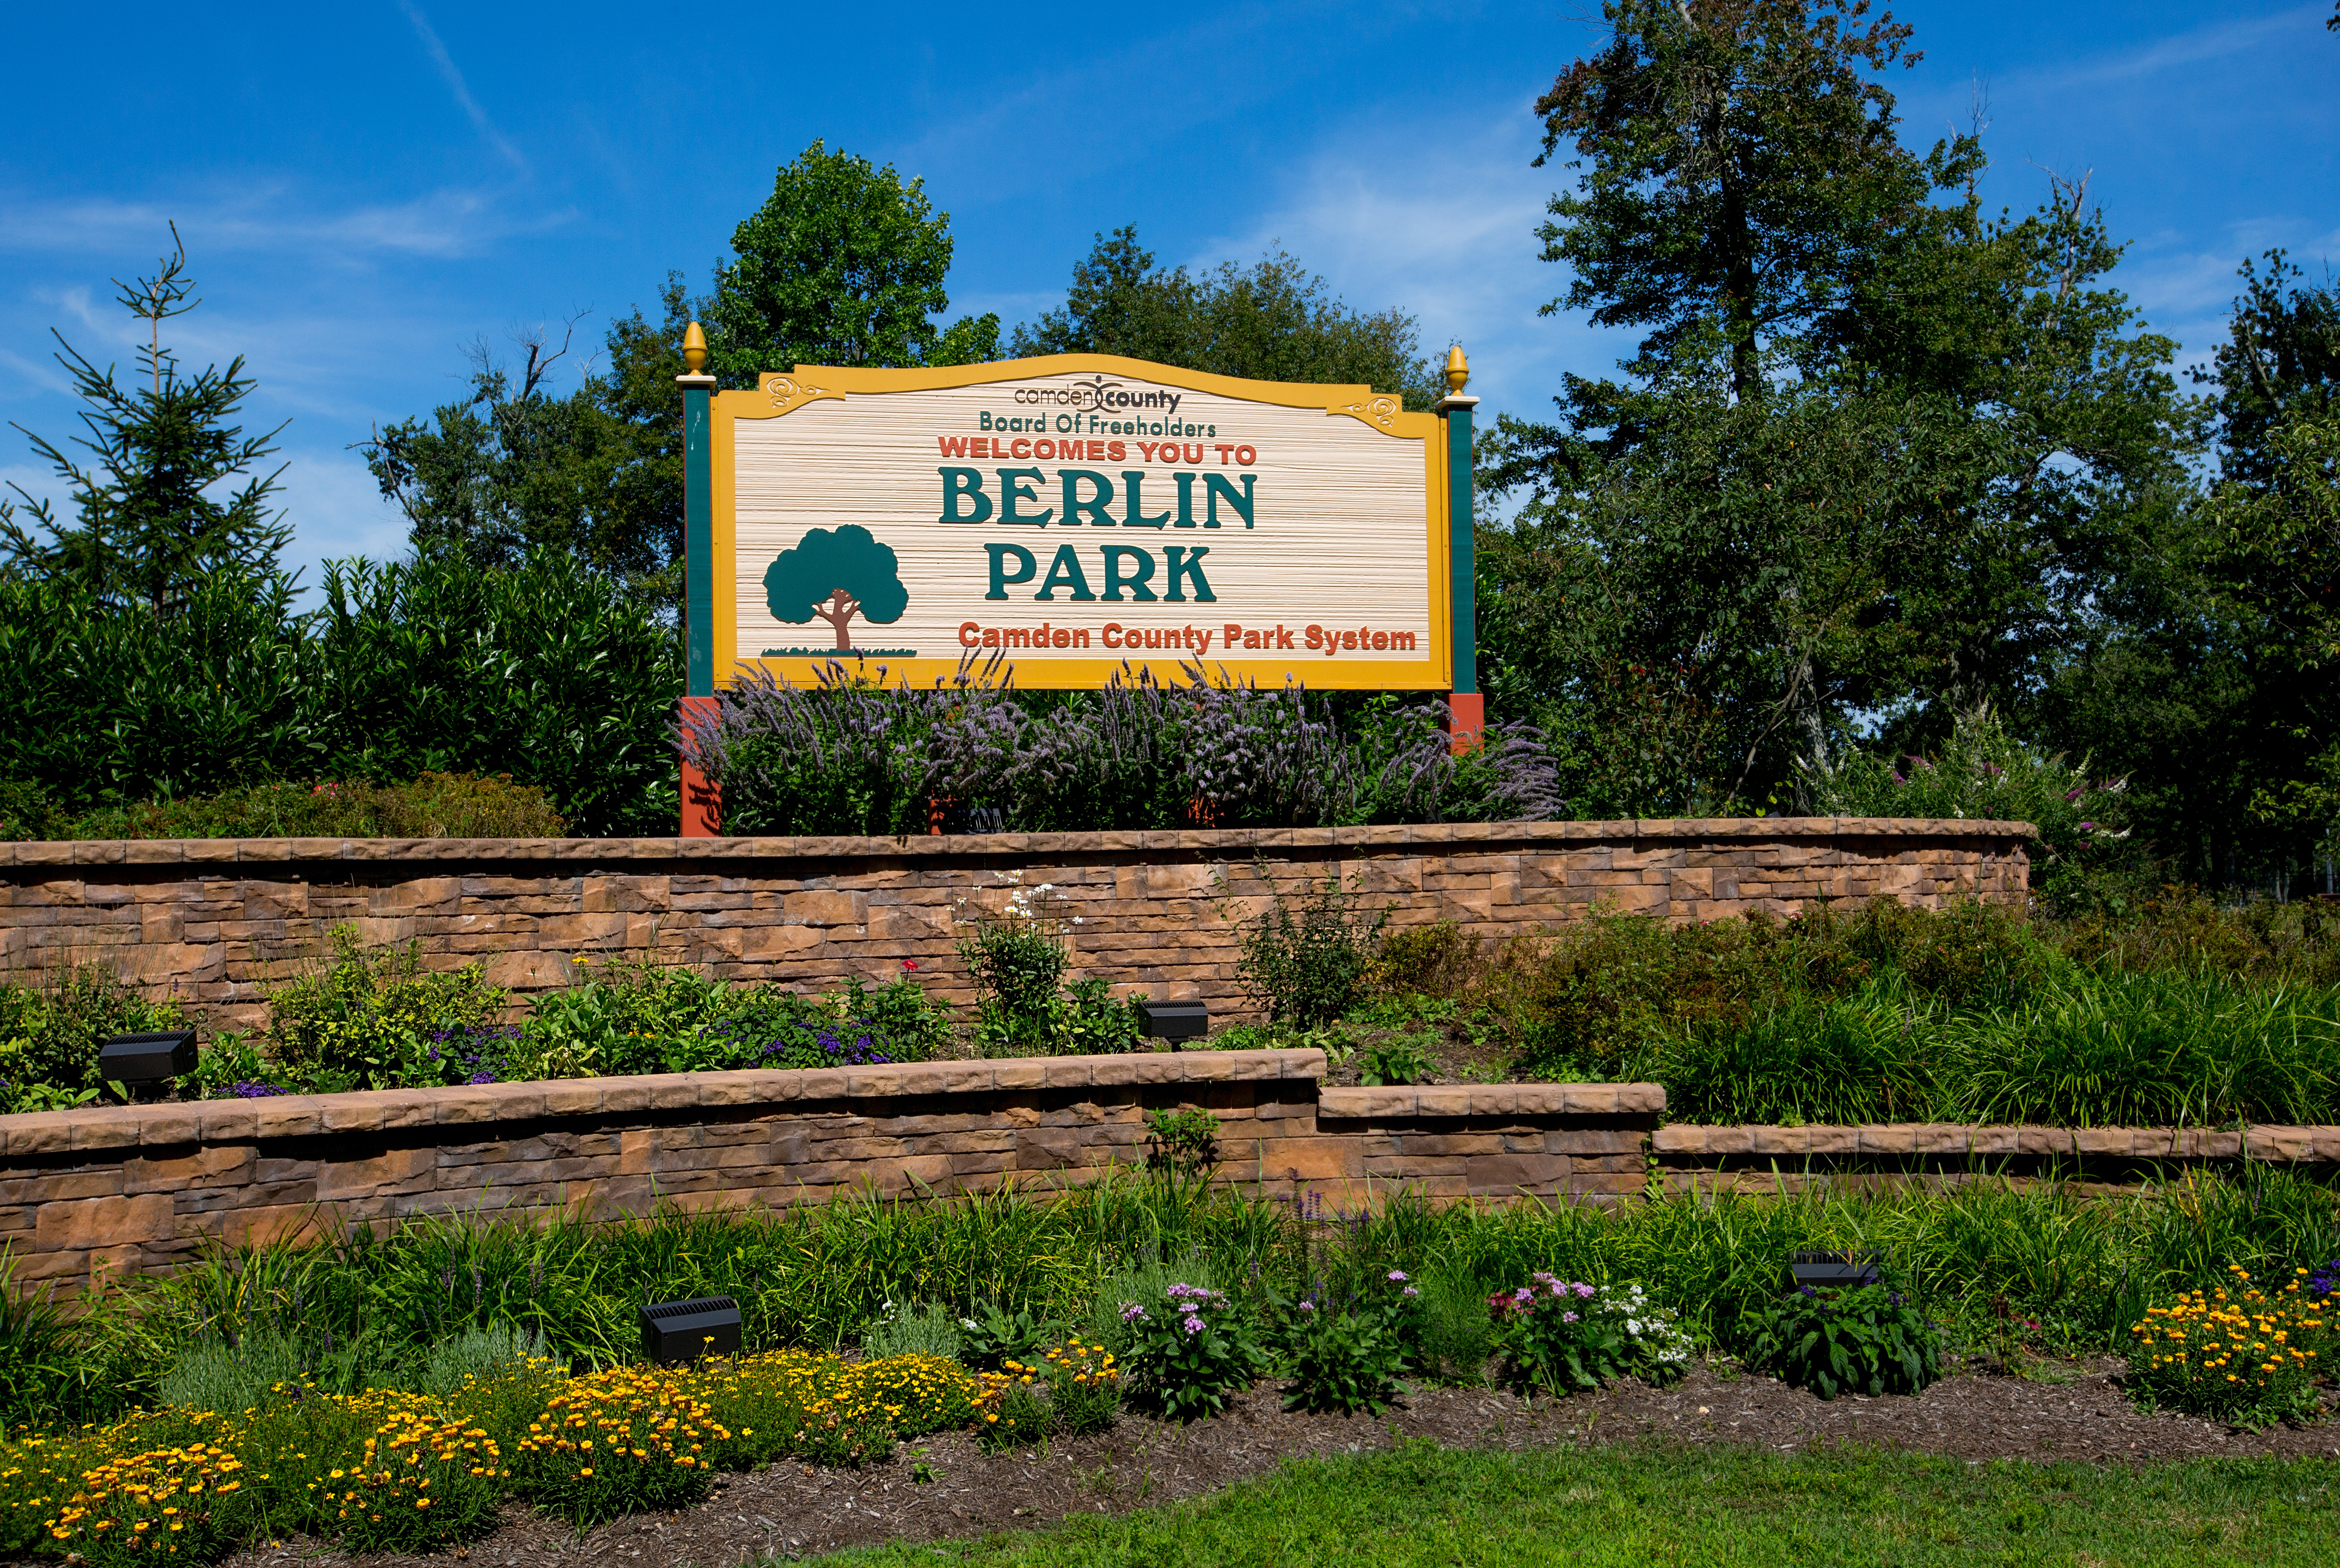 Photos taken in Berlin Park, Berlin, N.J., July 31, 2017

Camden County Photo by David M Warren